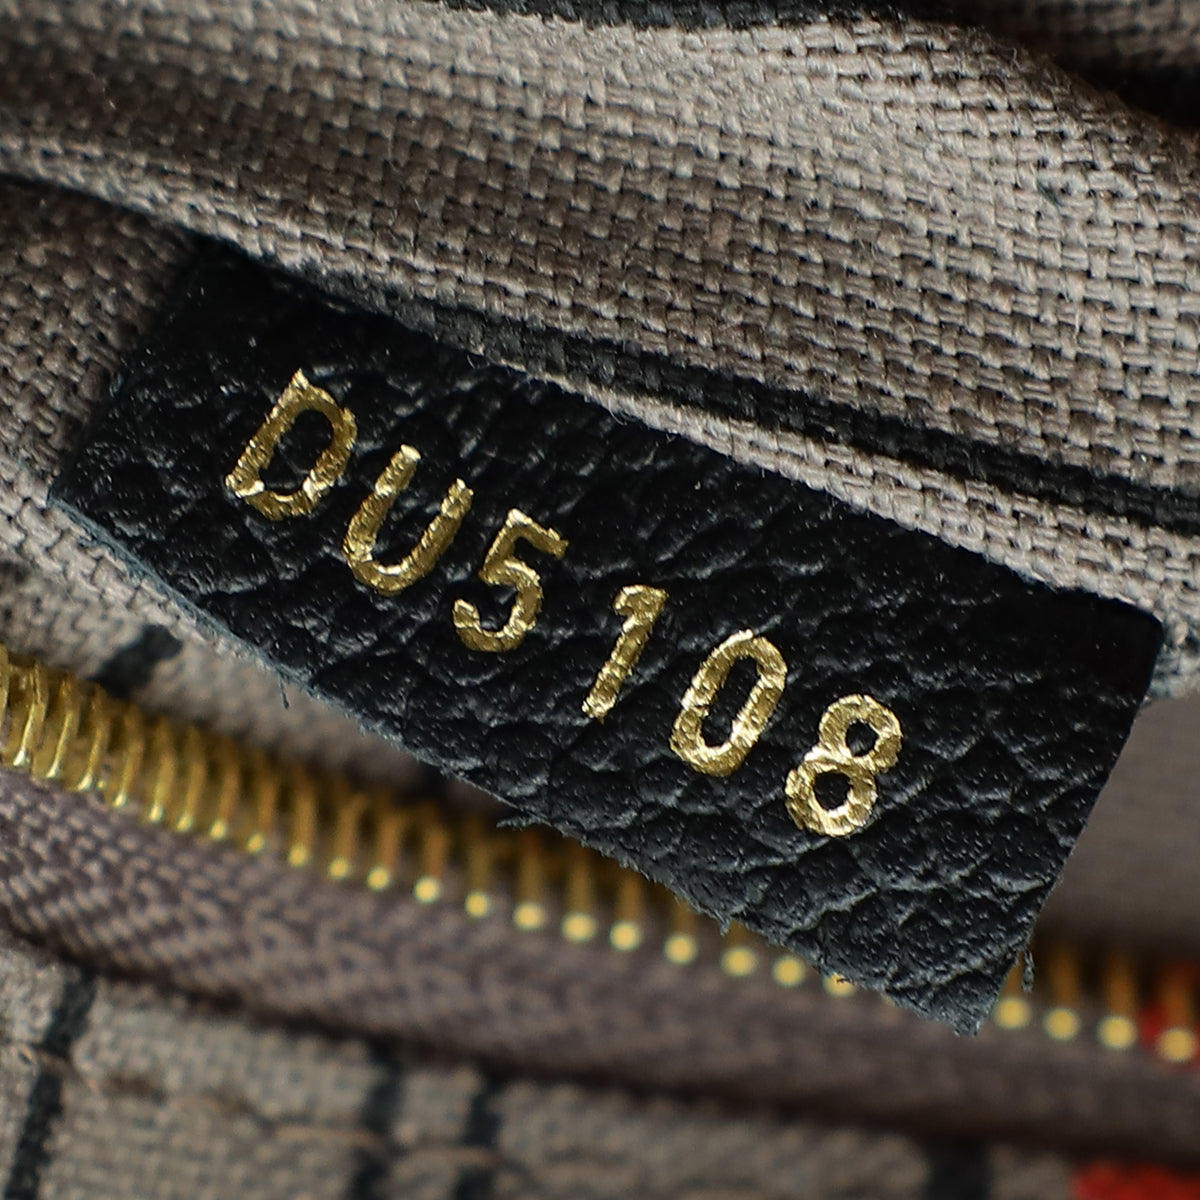 Louis Vuitton Black Monogram Empreinte Speedy 25 Bandouliere Bag W/ Twilly